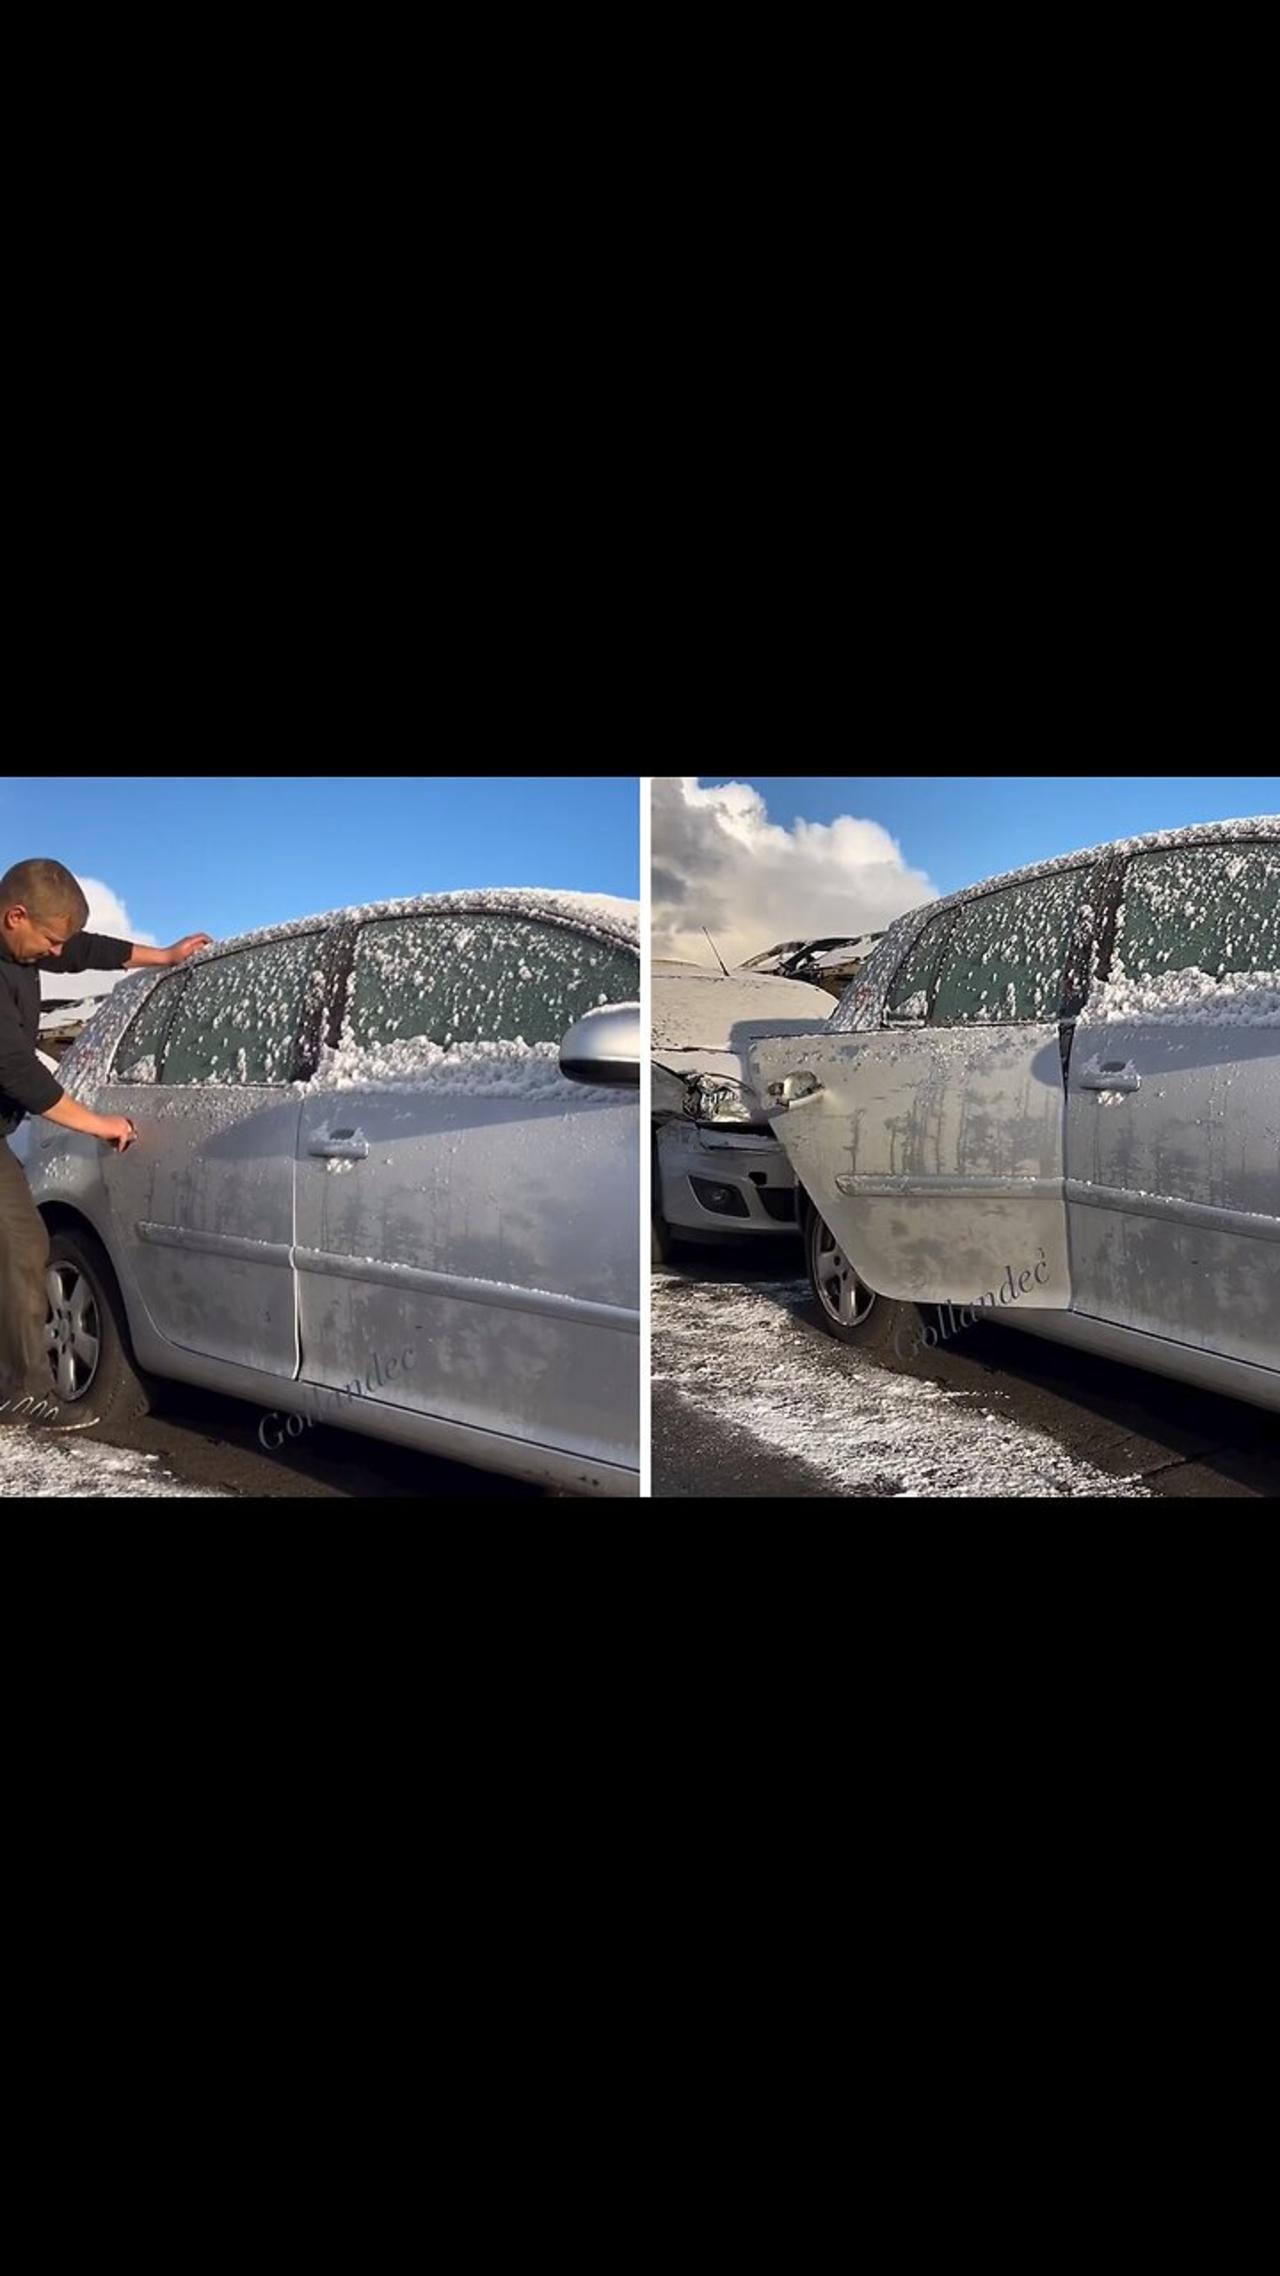 Dude hilariously brakes frozen door from Volkswagen car